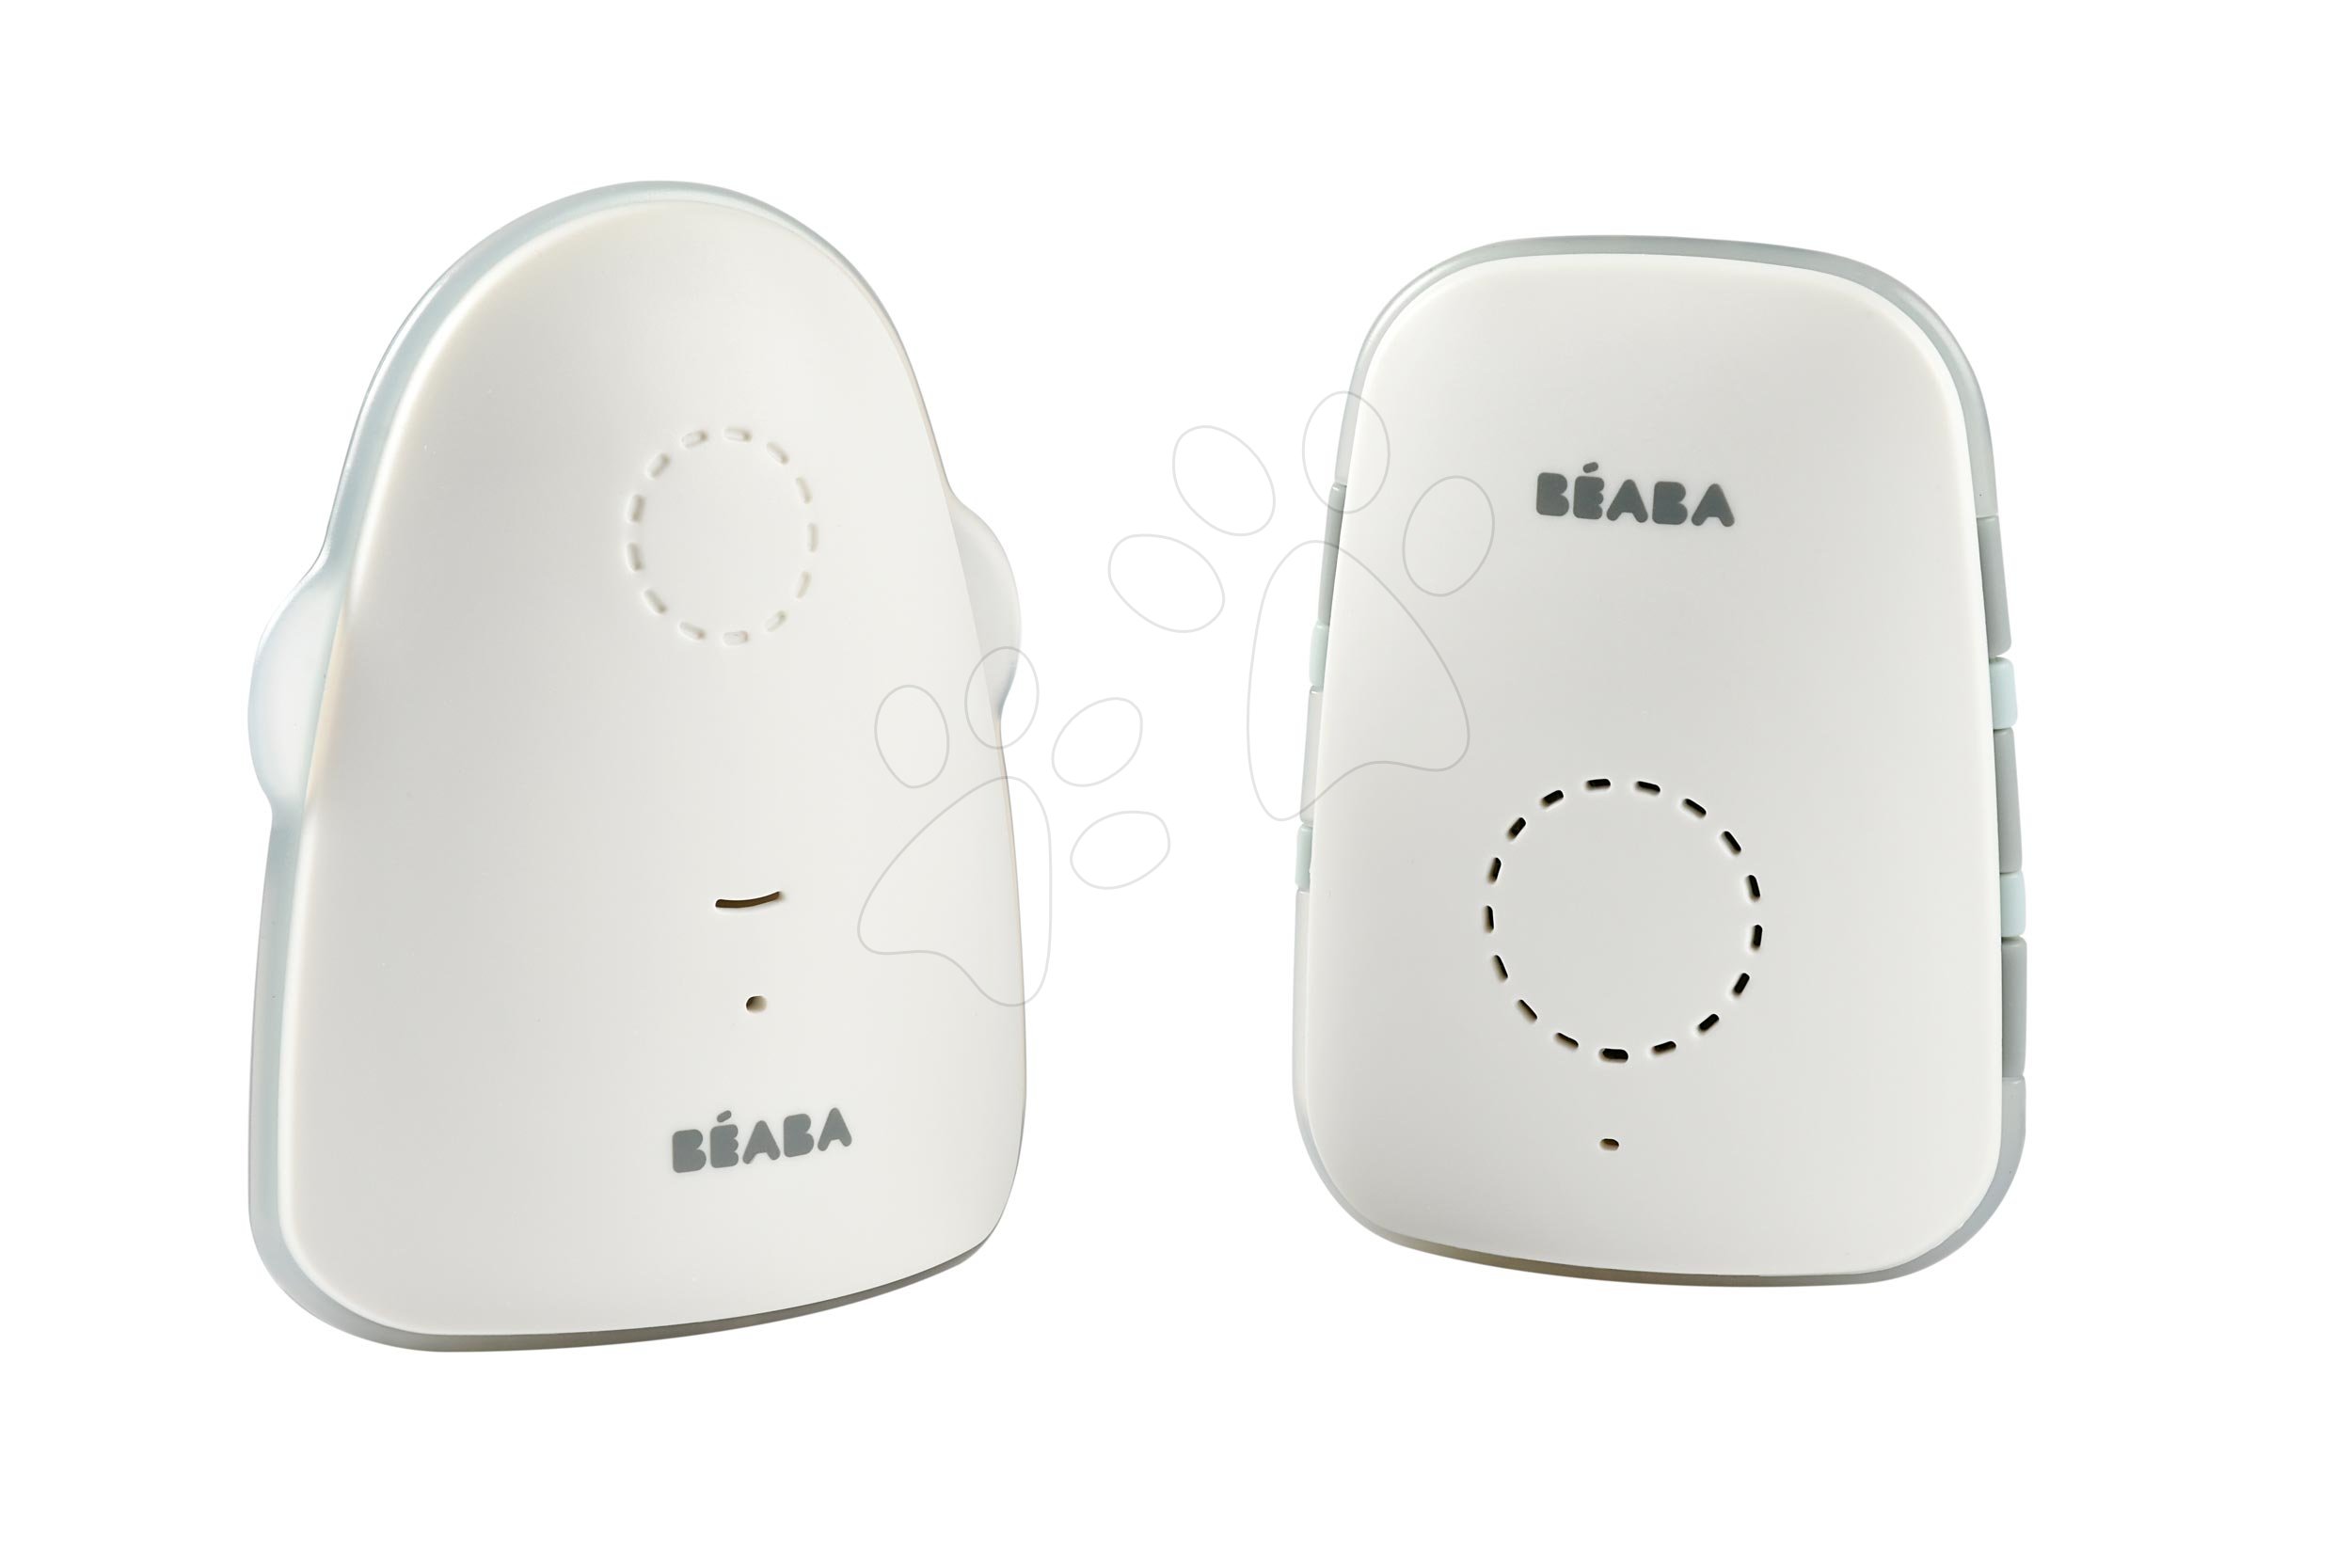 Elektronikus bébiőr Audio Baby Monitor Simply Zen connect Beaba hordozható nulla hullám technológiával és lágy fénnyel